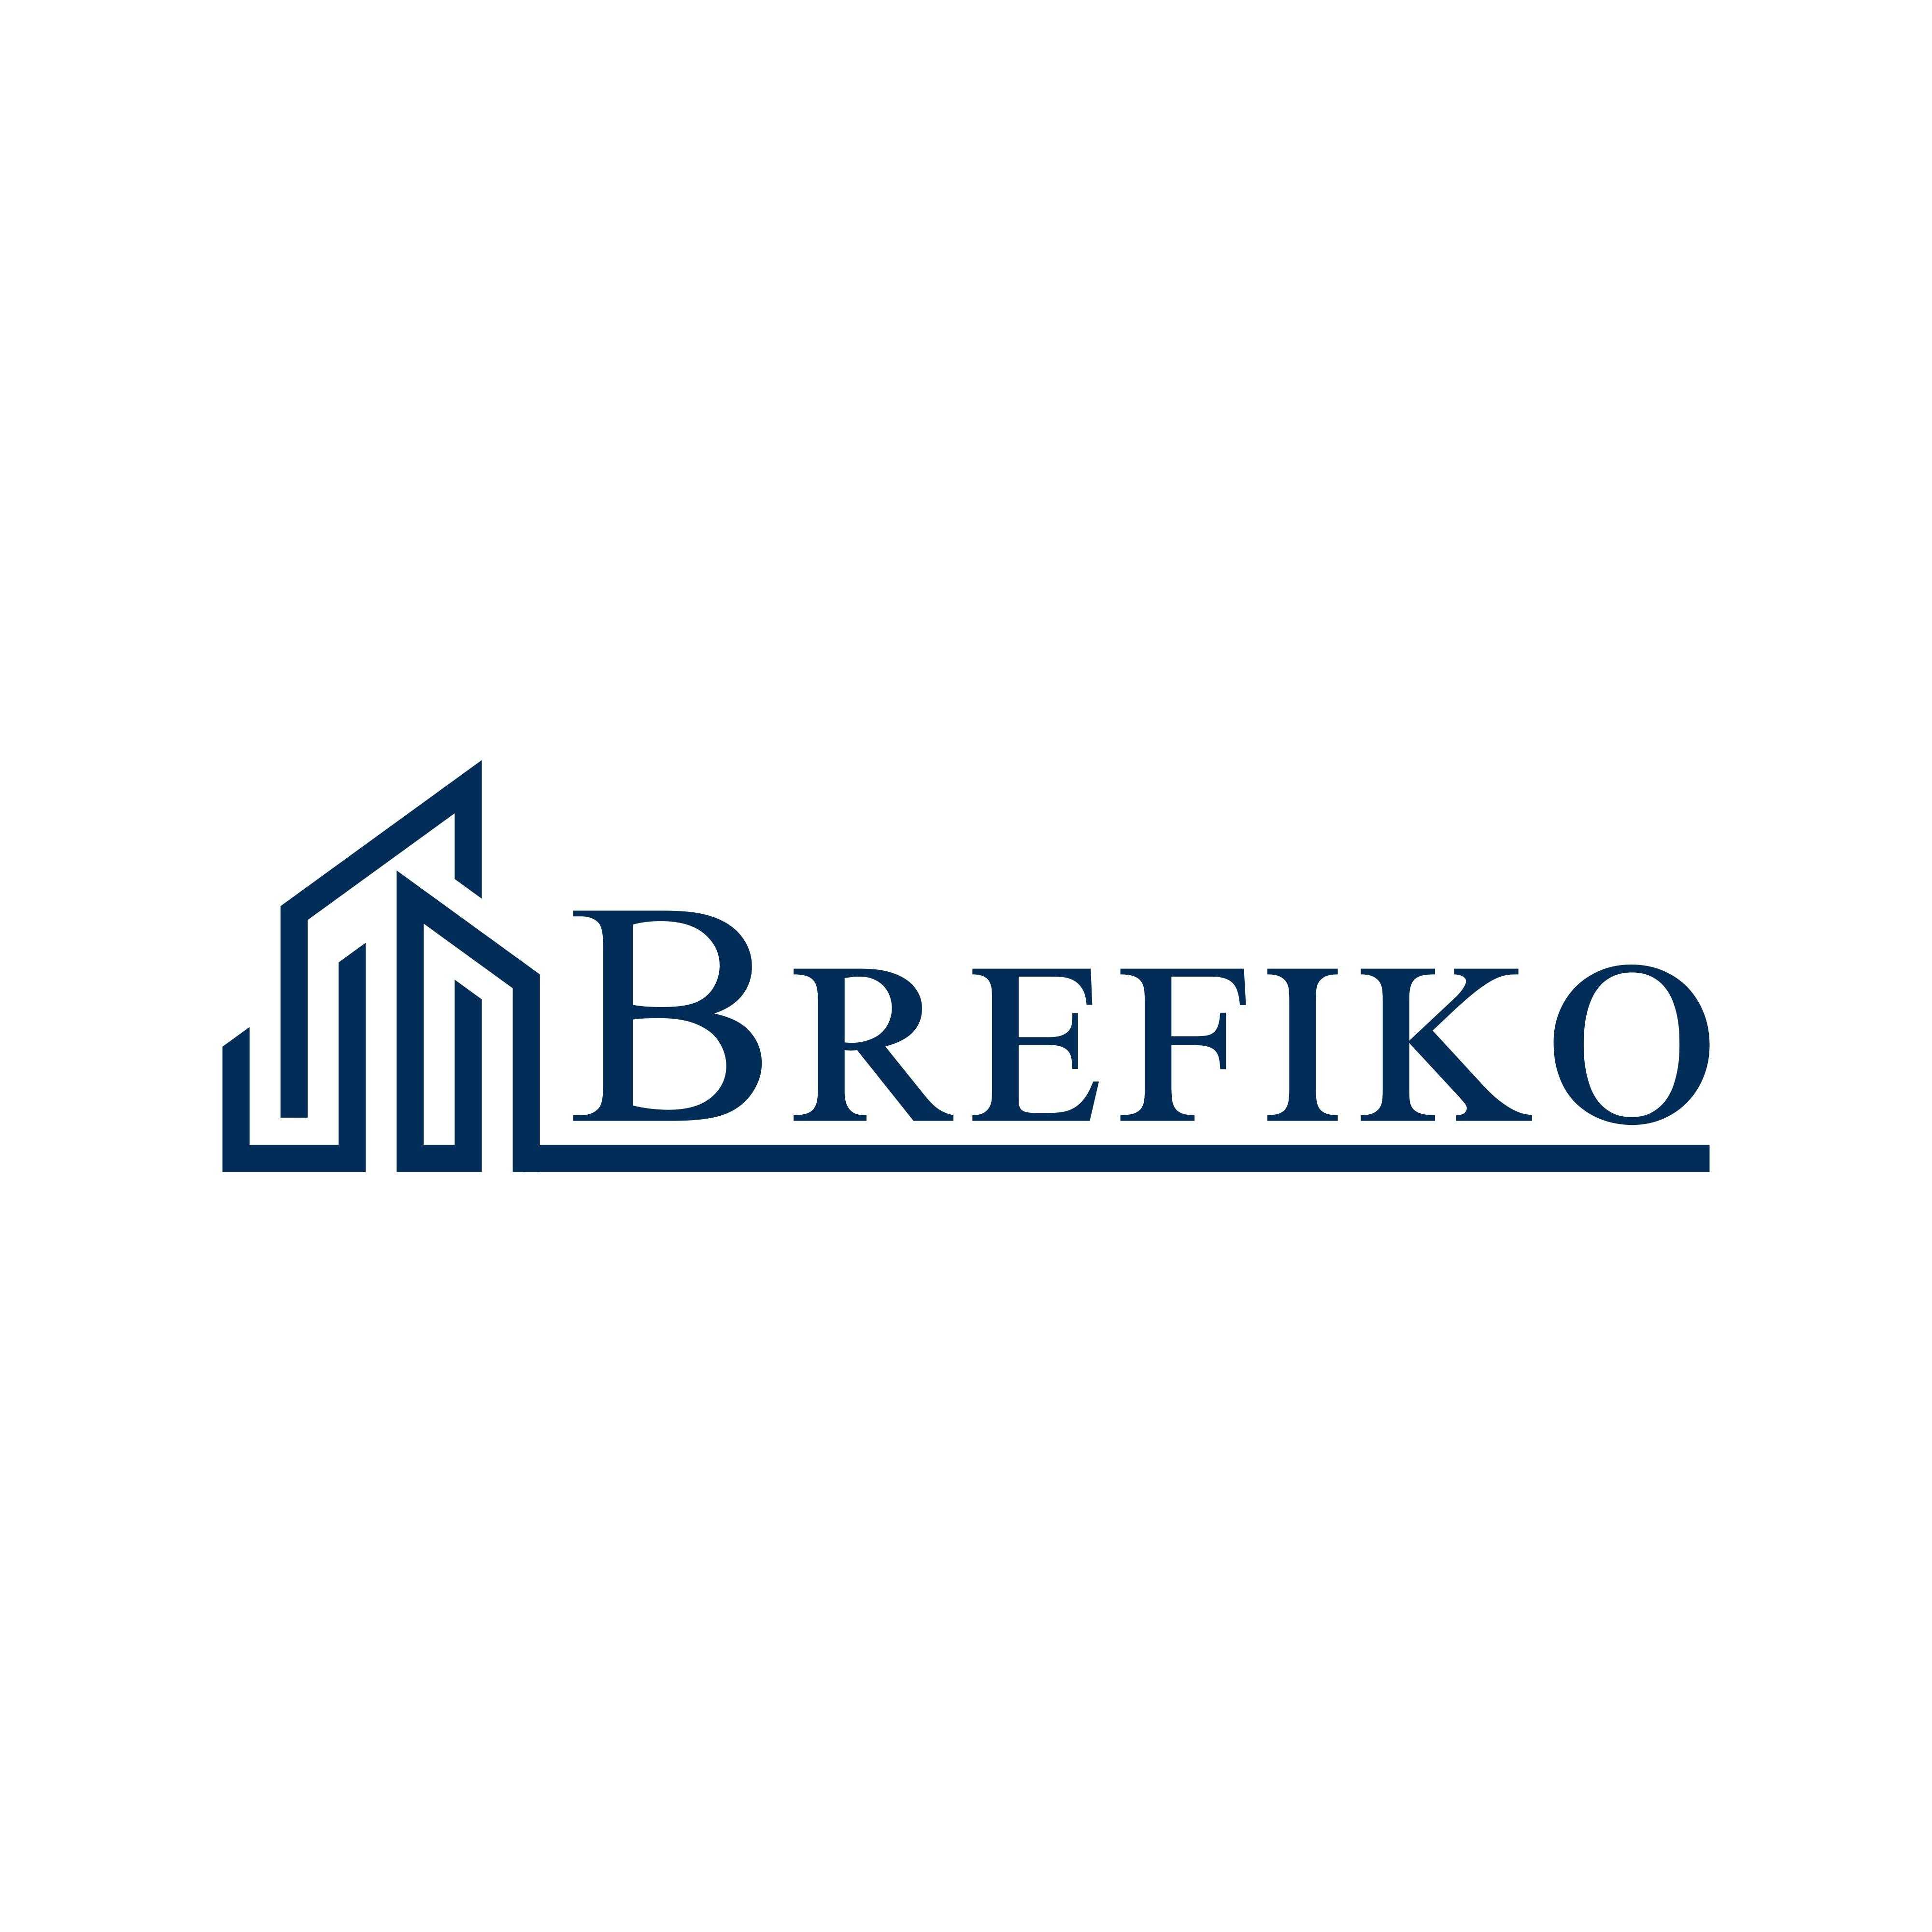 Bremer Finanzierungskontor in Bremen - Logo